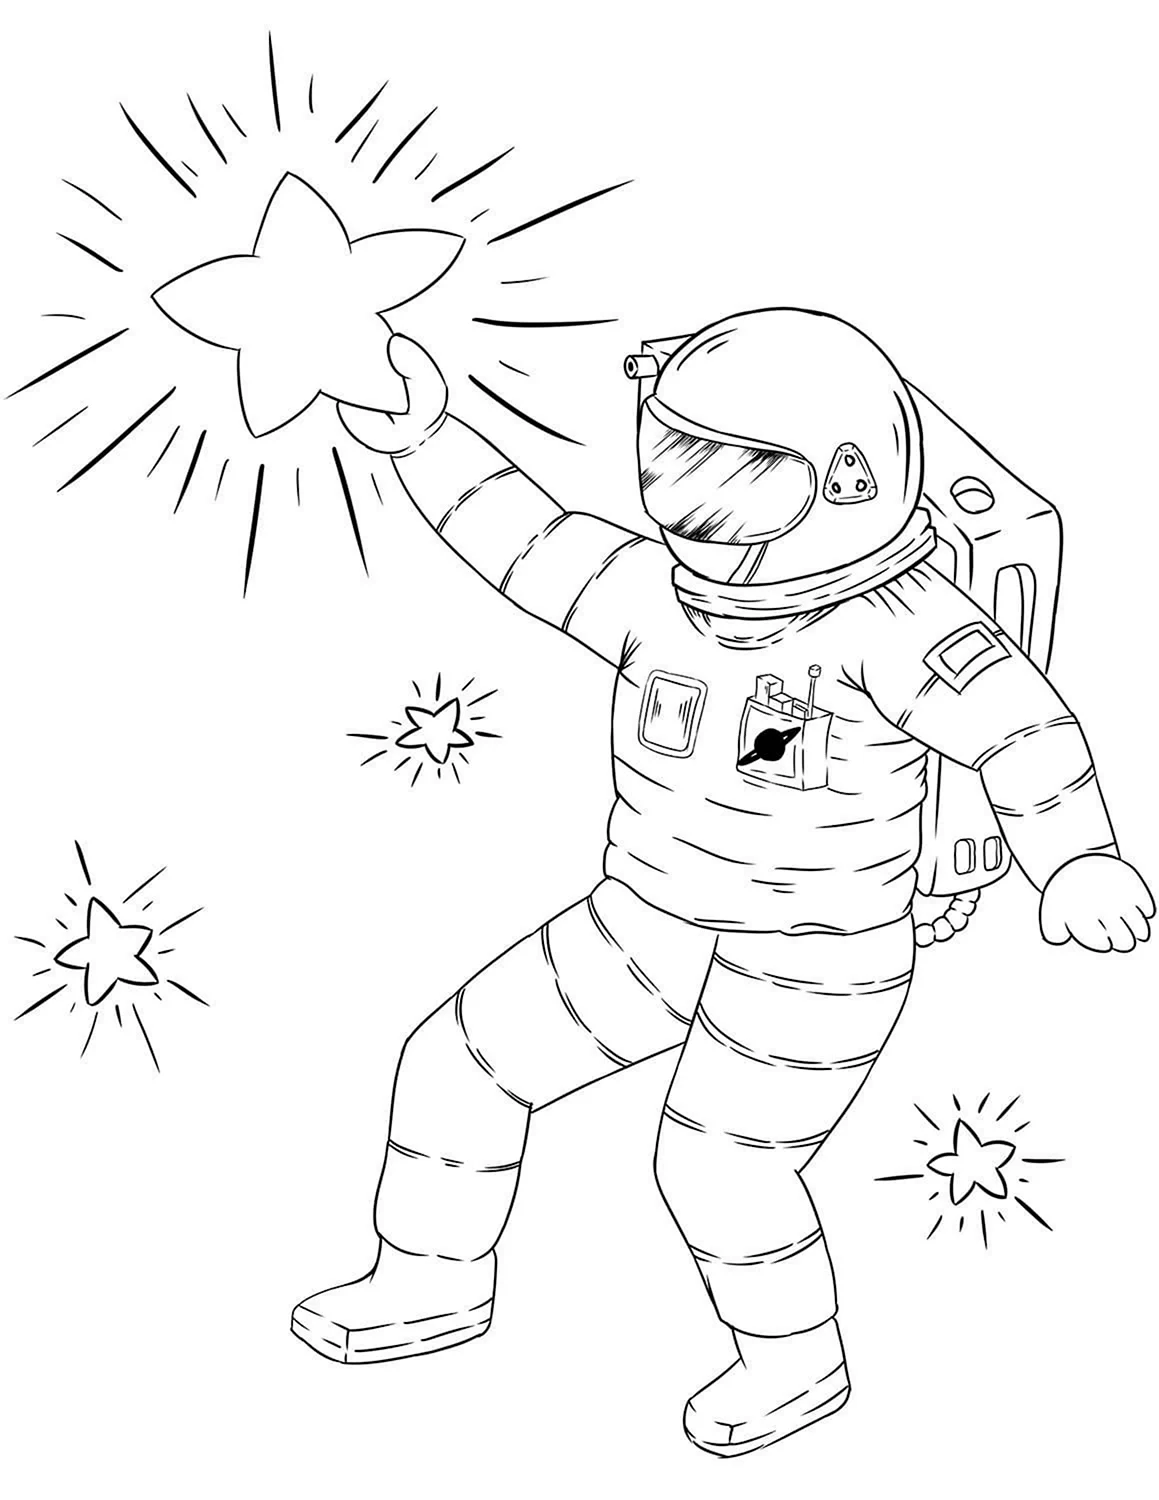 Космос раскраска для детей. Космонавт раскраска. Космонавт раскраска для детей. Космонавтика раскраски для детей. Рисунки для срисовки ко дню космонавтики